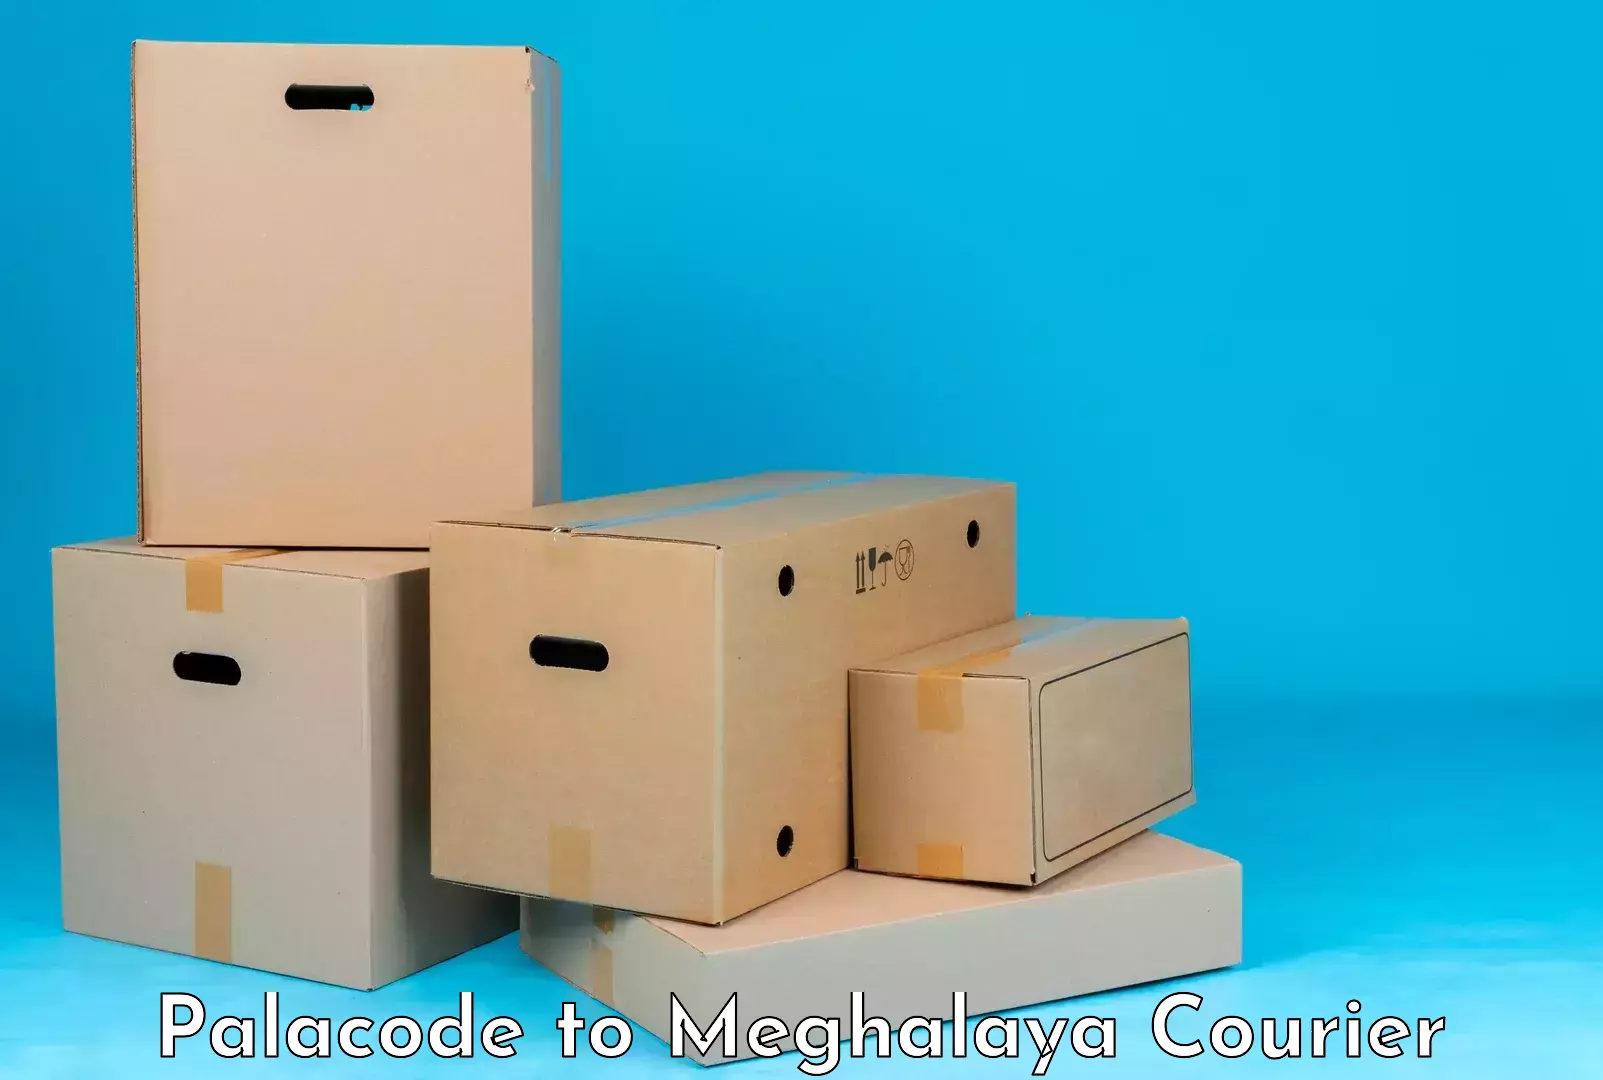 Luggage transport service Palacode to Meghalaya